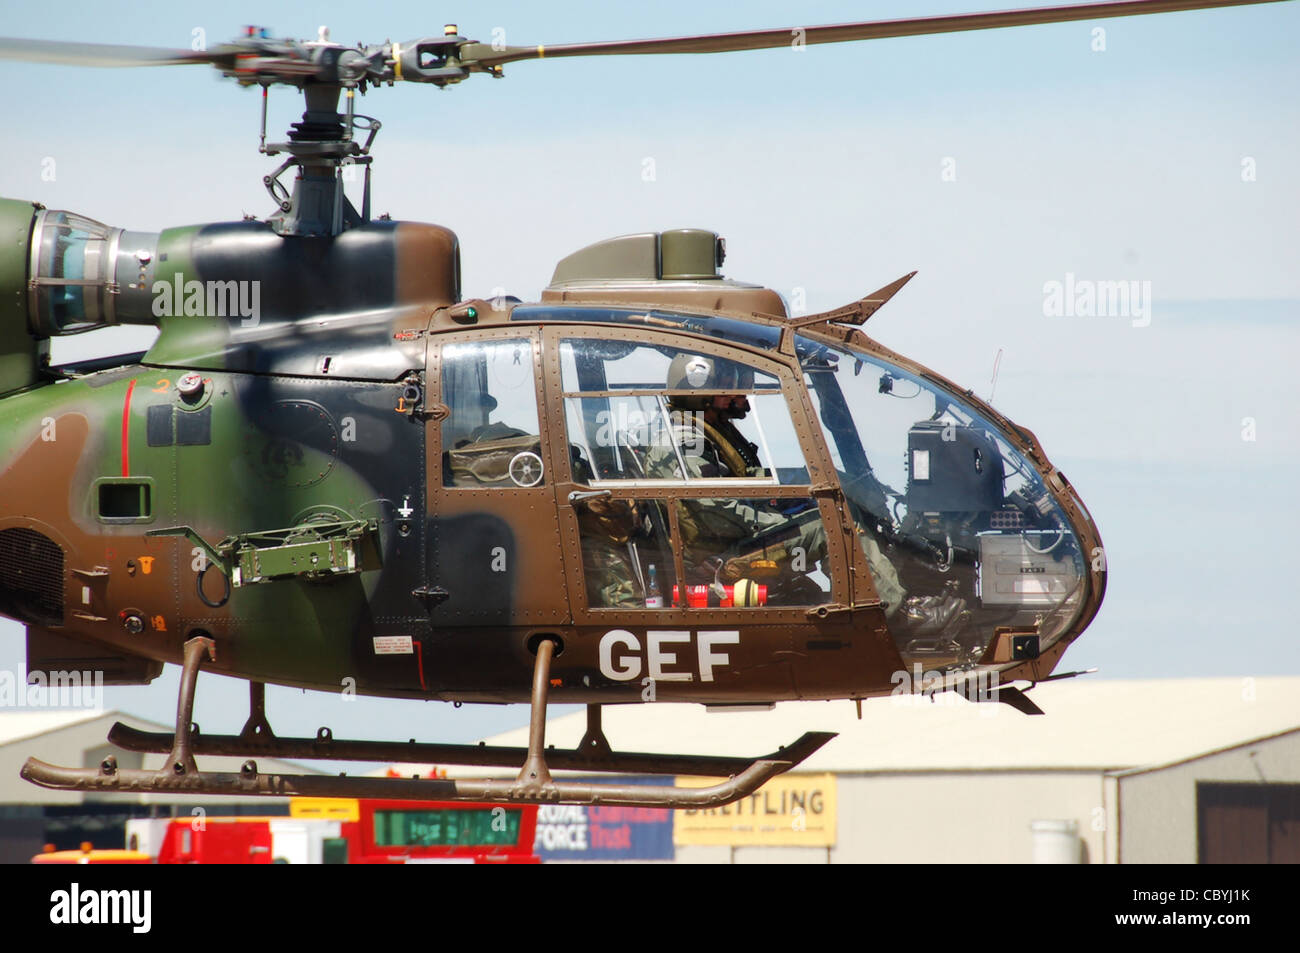 Französische Armee (Armee de Terre) Aerospatiale AS 342L 1 Gazelle (militärische Code GEF) schweben Taxis zur Startbahn am Air Tattoo 2010 Stockfoto